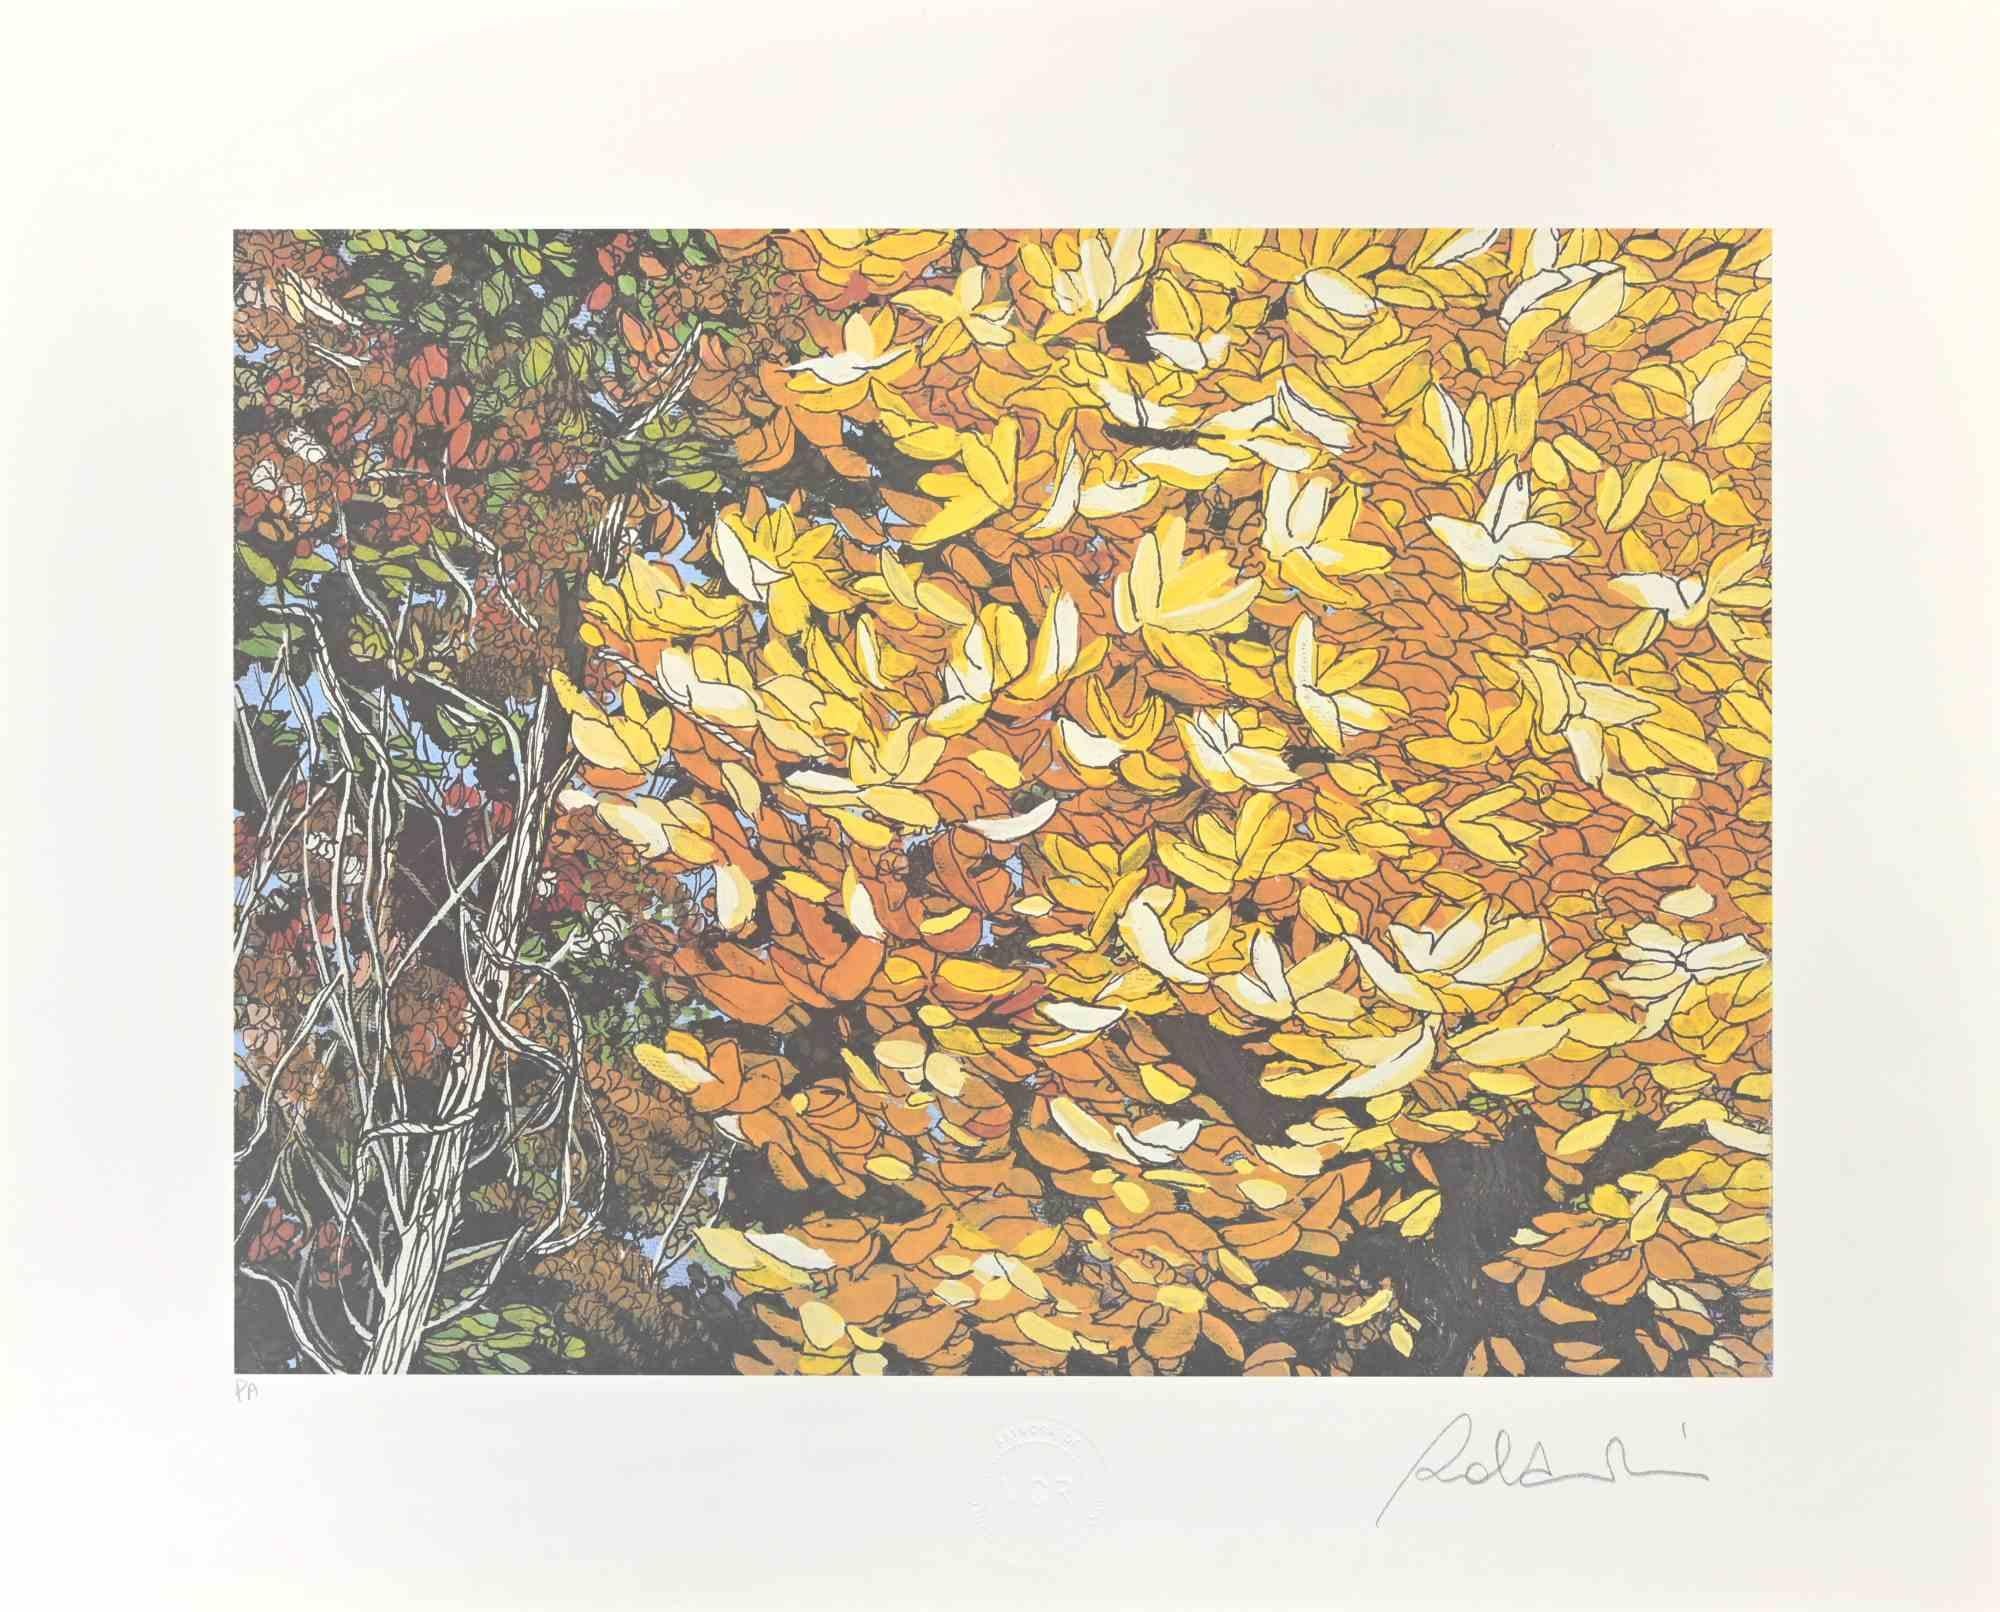 Rolandi (Maurizio Coccia) Figurative Print - Landscapes of Autumn - Screen Print by Rolandi - 1980s